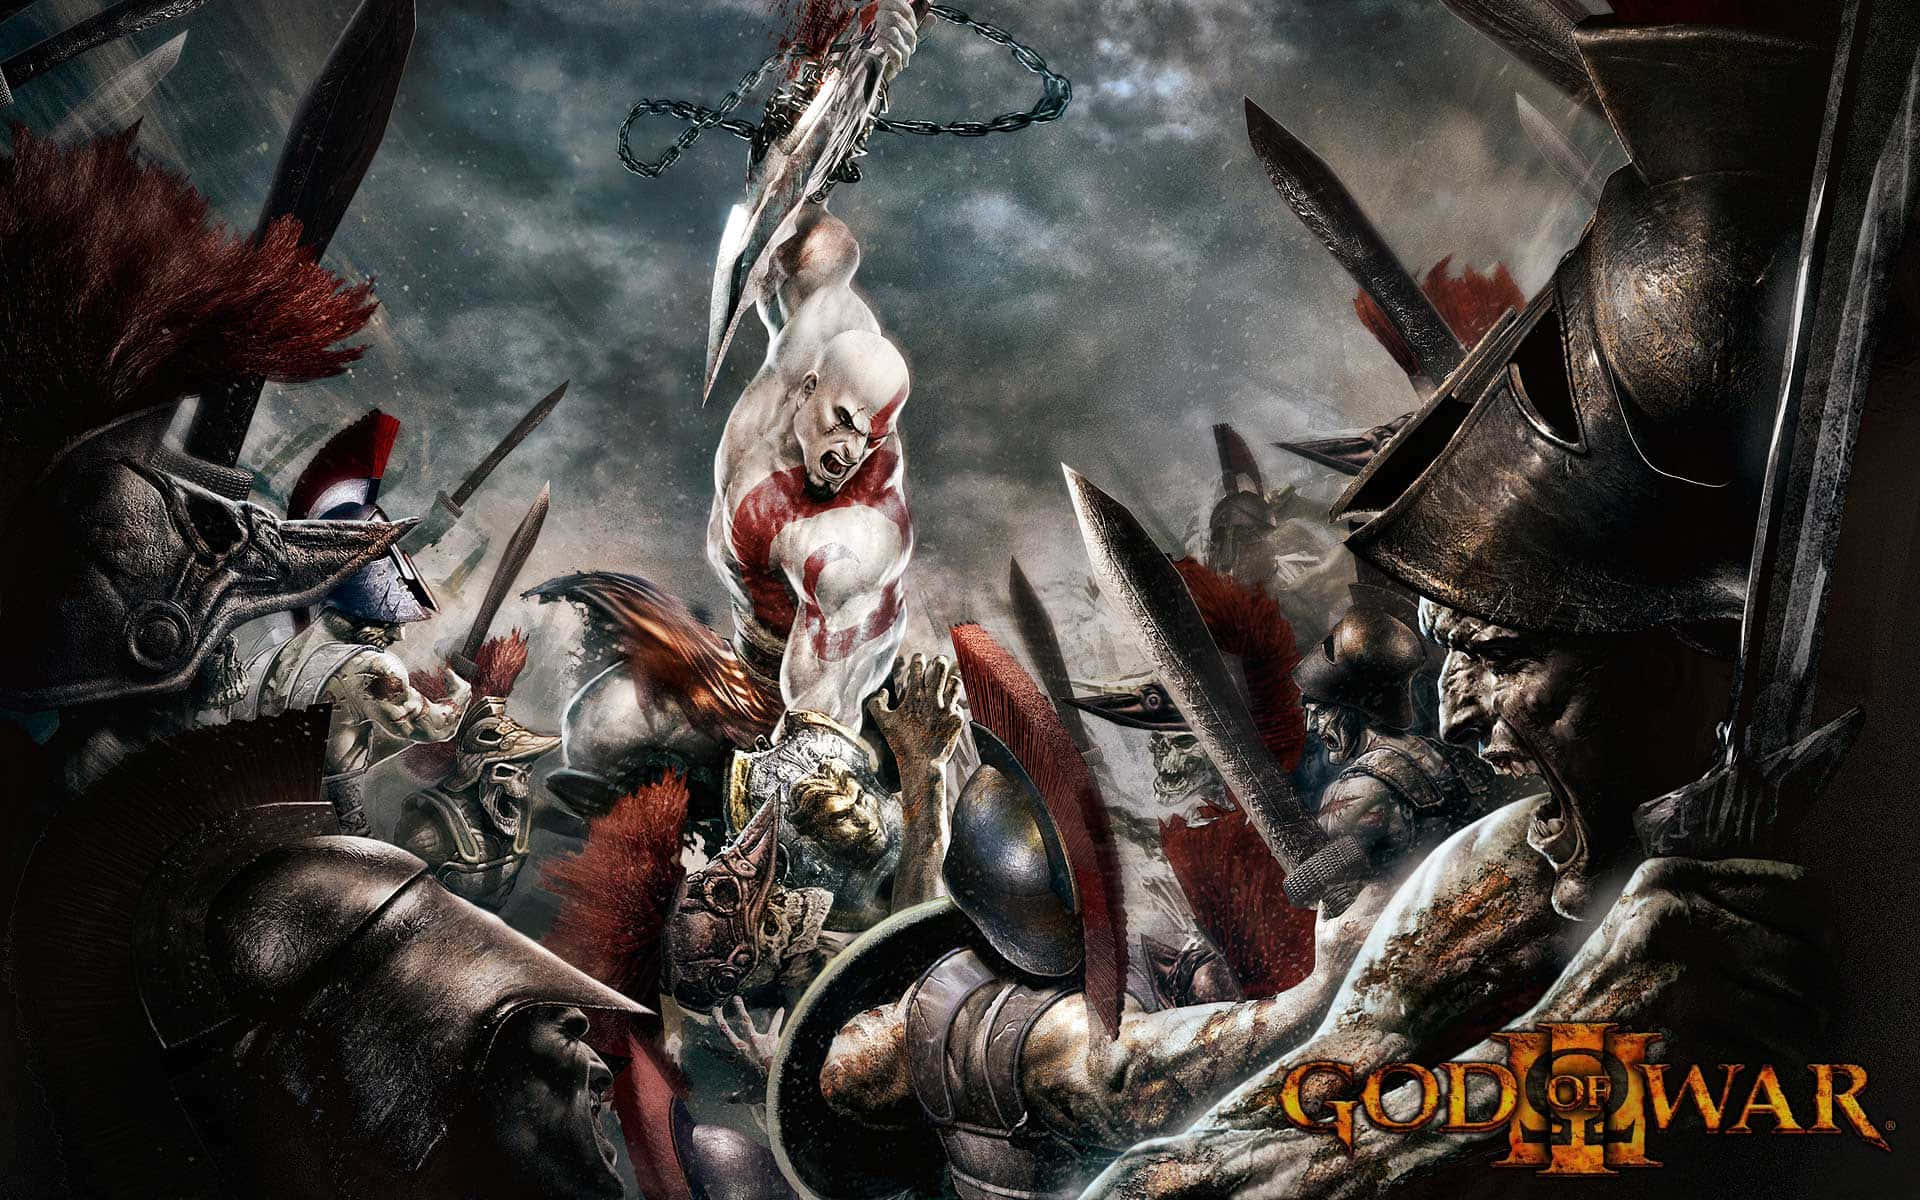 Kratos og Athena når en episk klimaks i God of War 3. Wallpaper